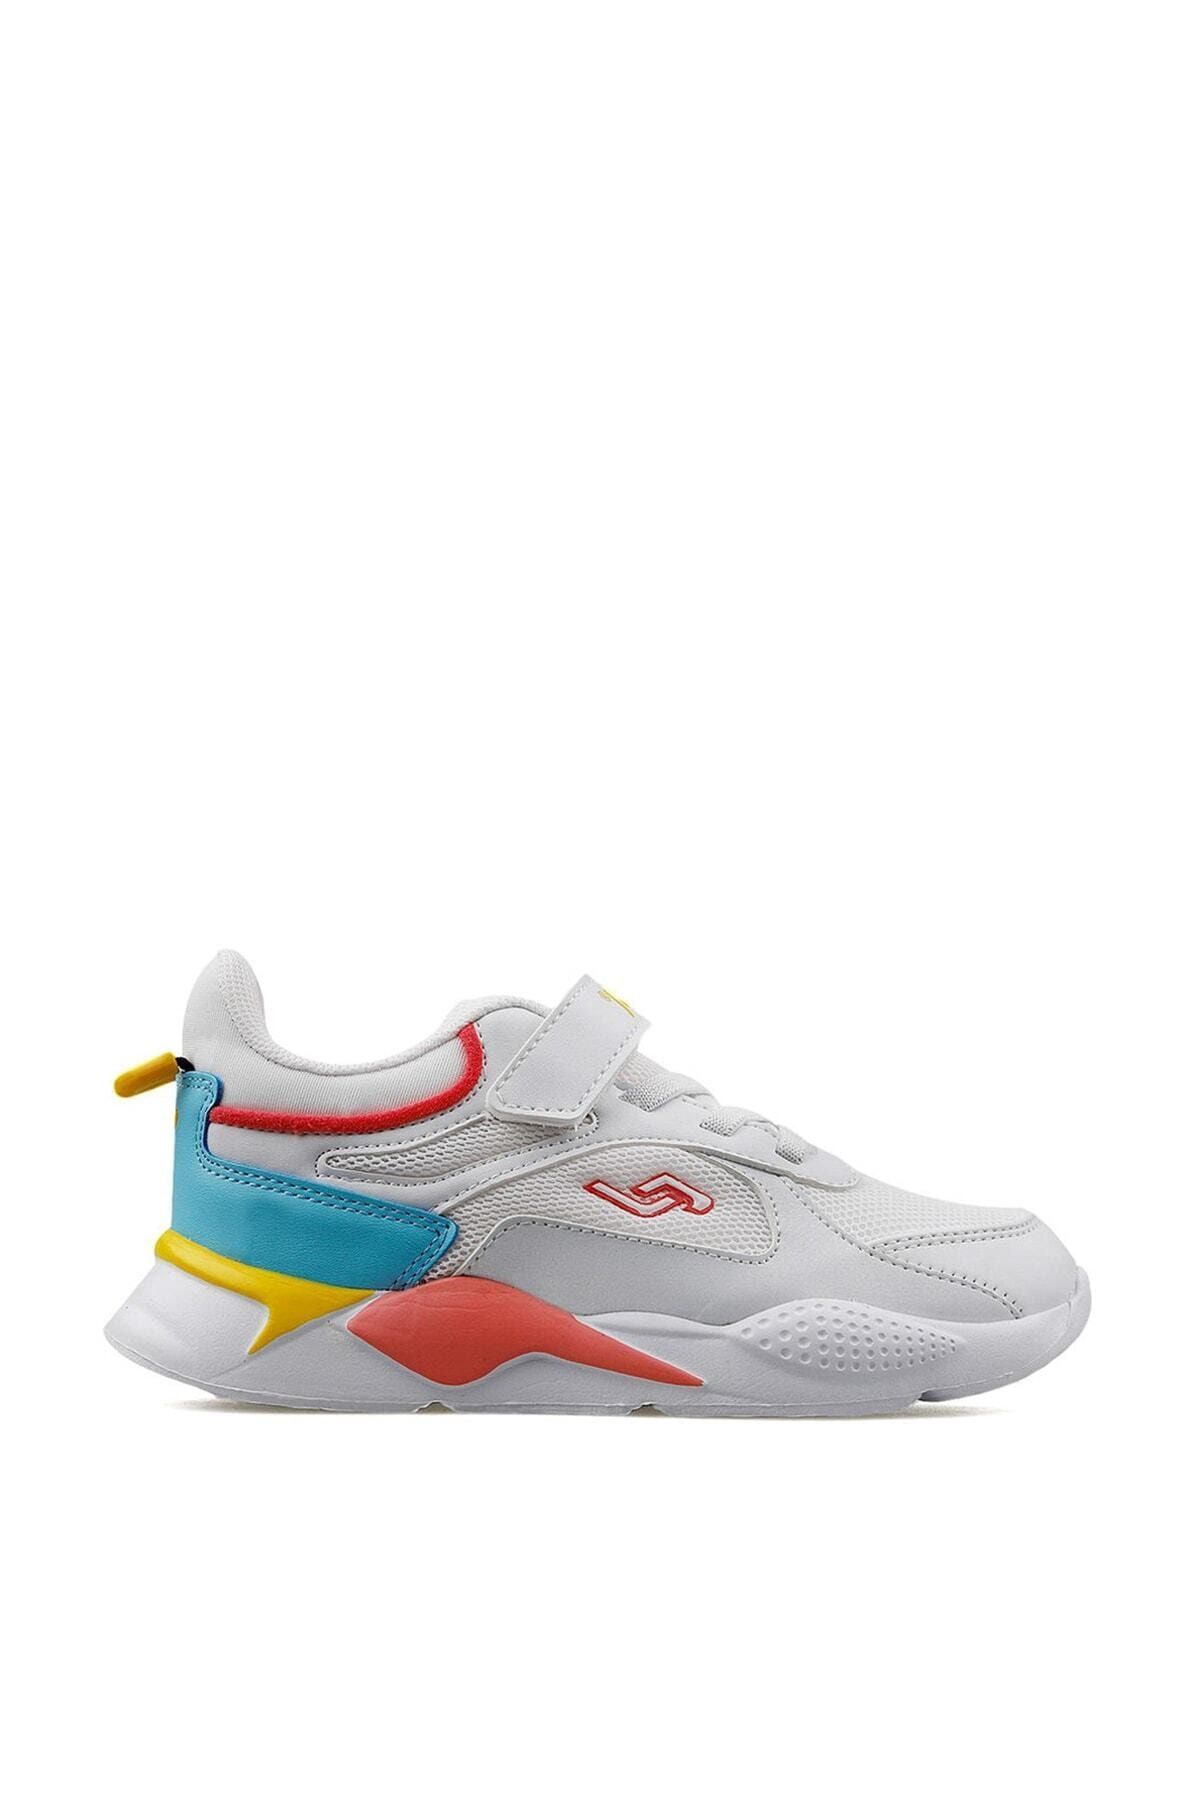 Jump 24931 Beyaz - Bebe Mavi - Sarı - Pembe Kız Çocuk Yazlık Günlük Yürüyüş Sneaker Spor Ayakkabı